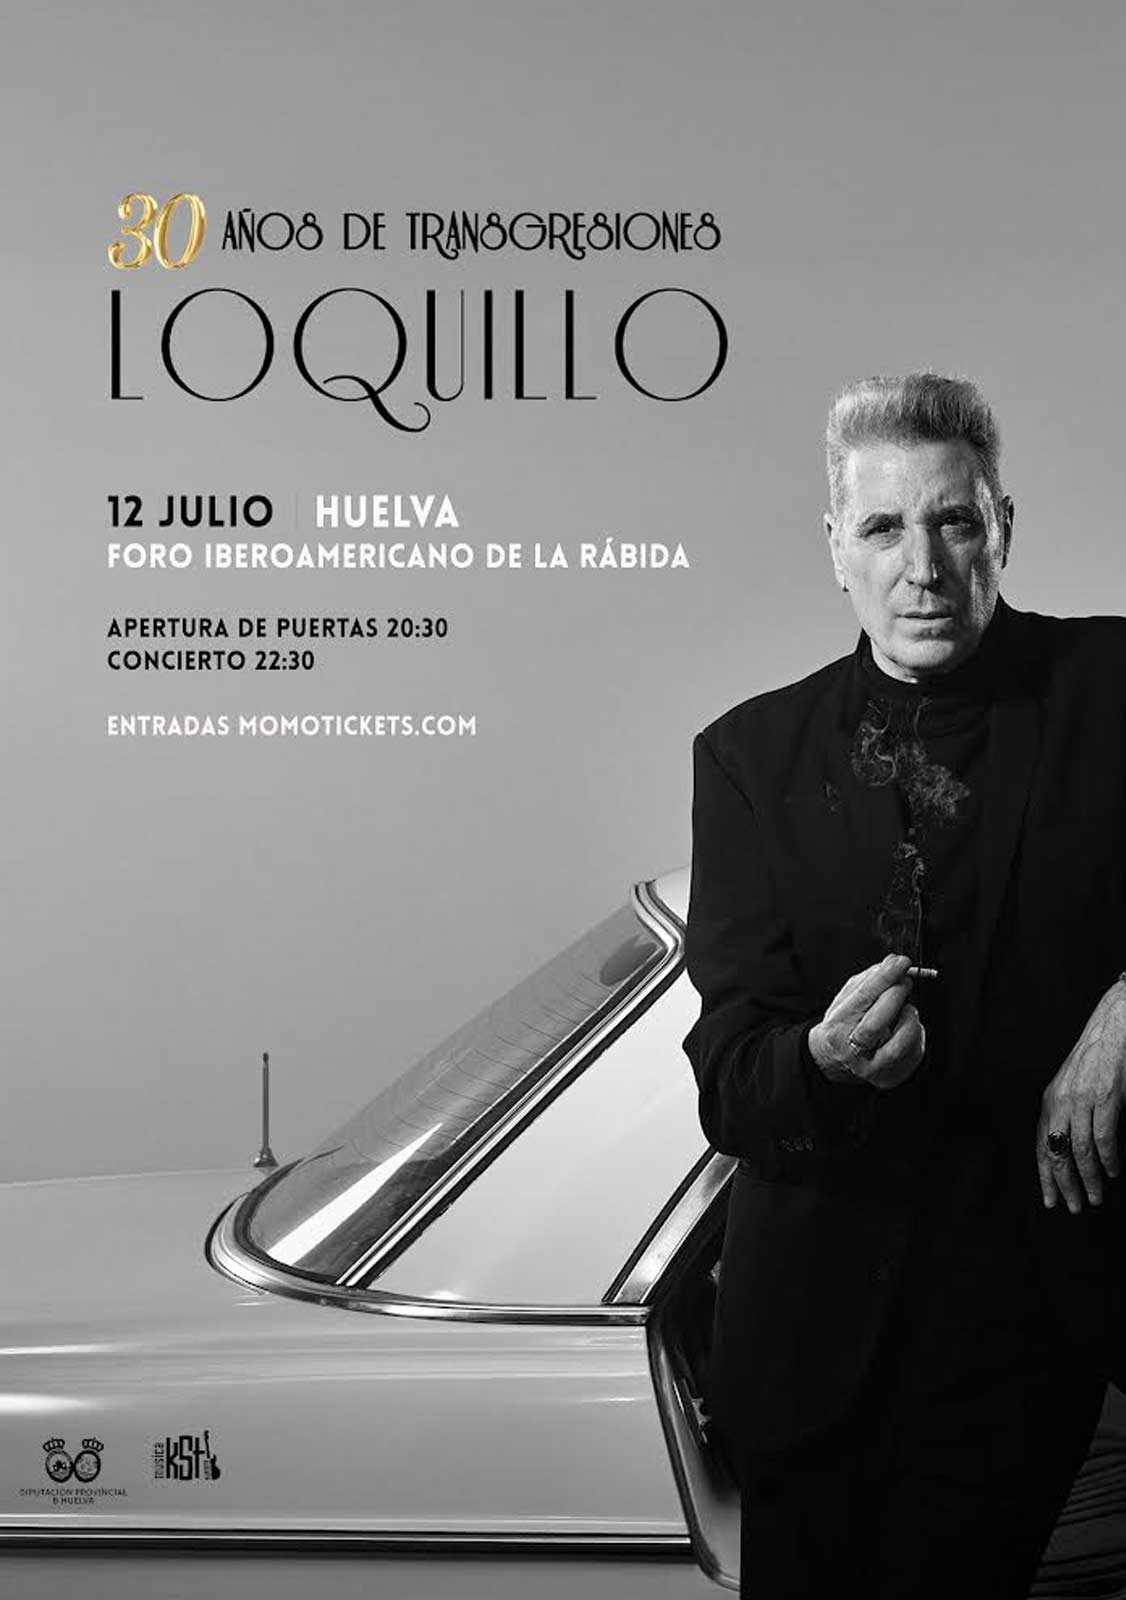 Loquillo en concierto en Huelva 30 anos de transgresiones Foro Iberoamericano de la rabida 12 de julio